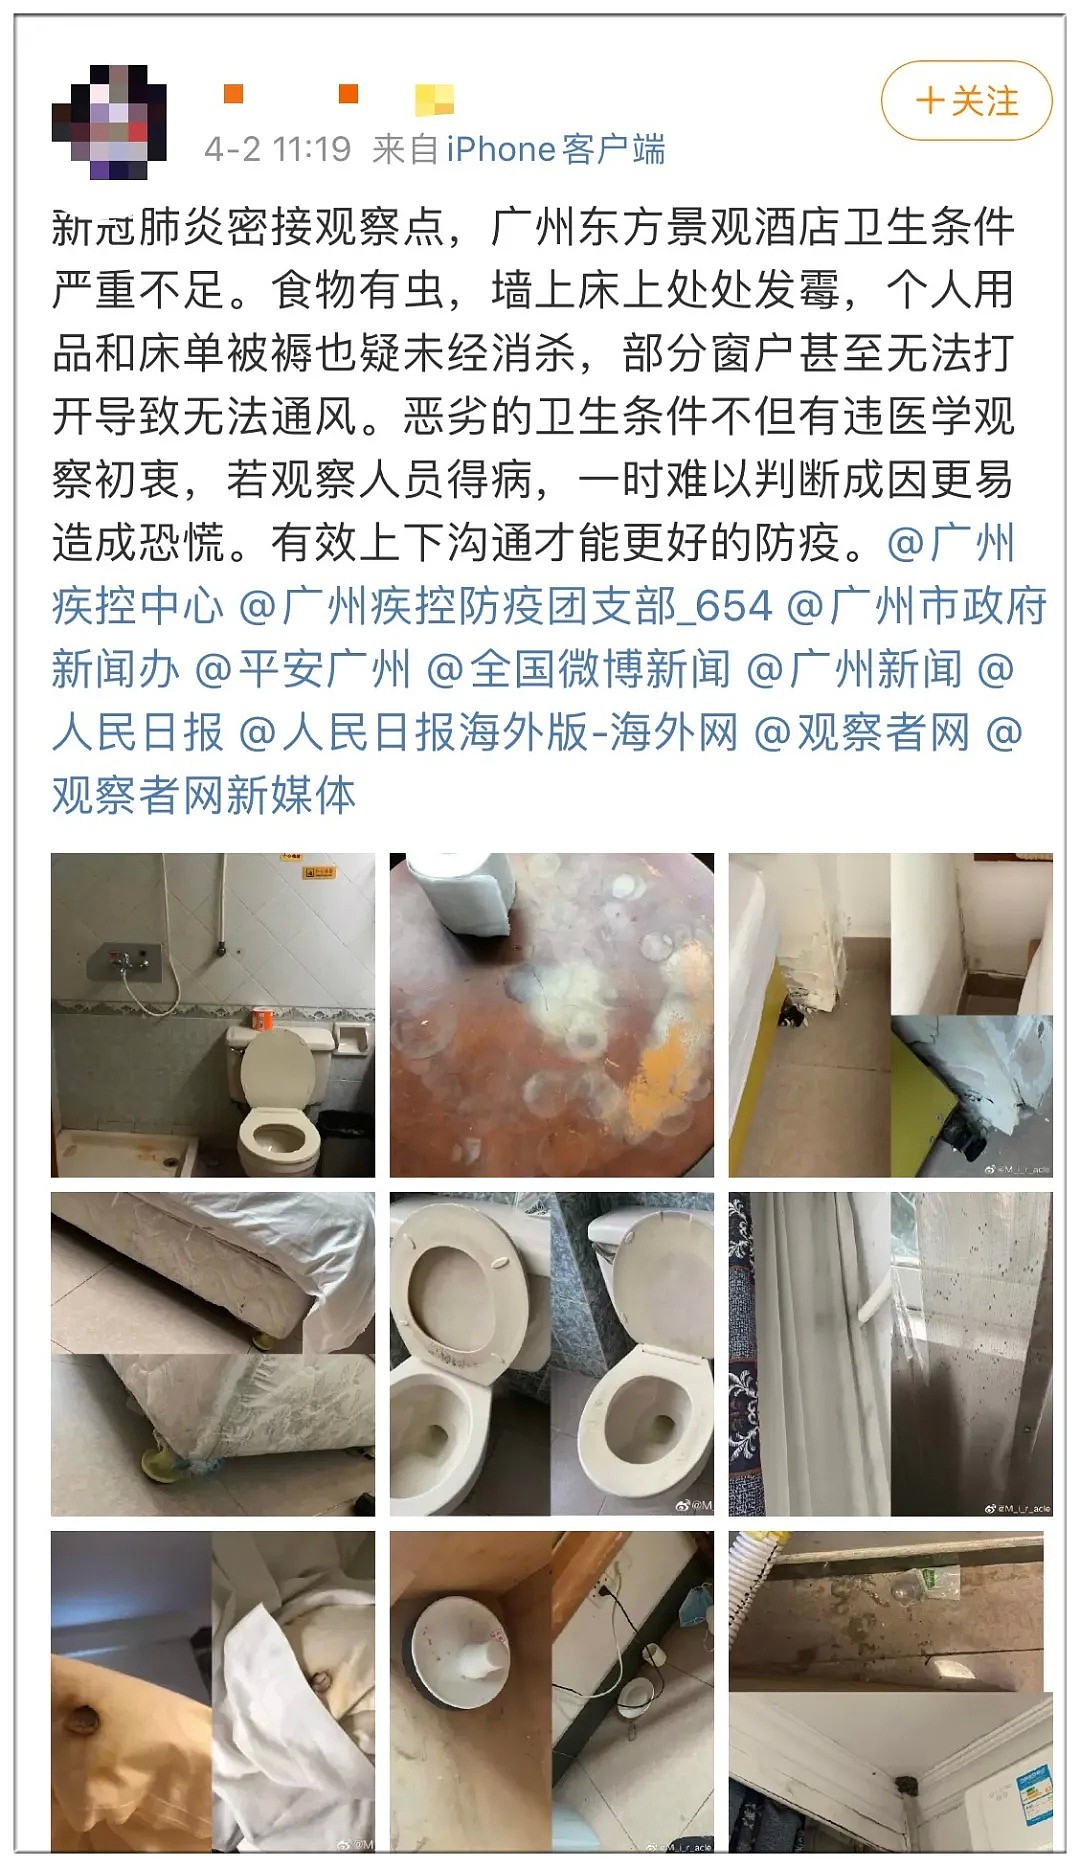 中国留学生回国途中接触疑似感染者，被送至超恶心酒店隔离！床垫发霉、马桶损坏、入住仅三小时就全身红肿过敏 - 23